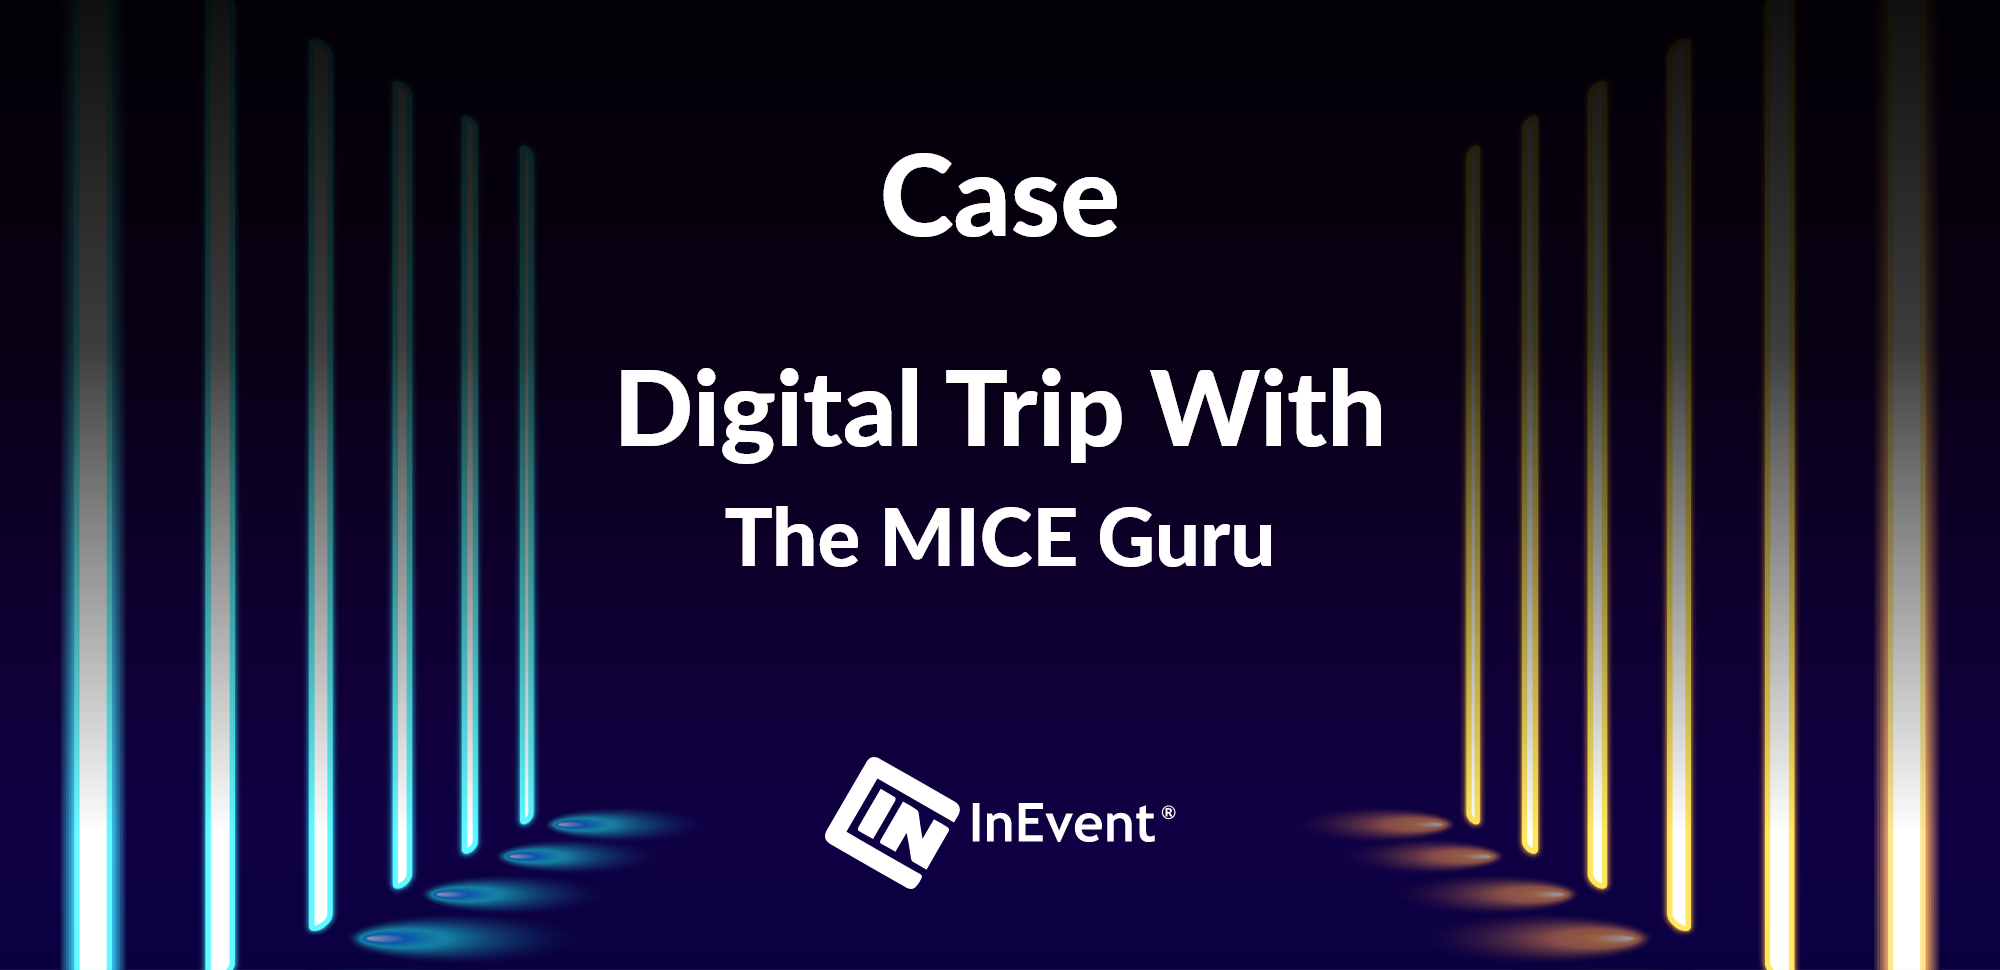 Digitale Reise mit dem MICE-Guru